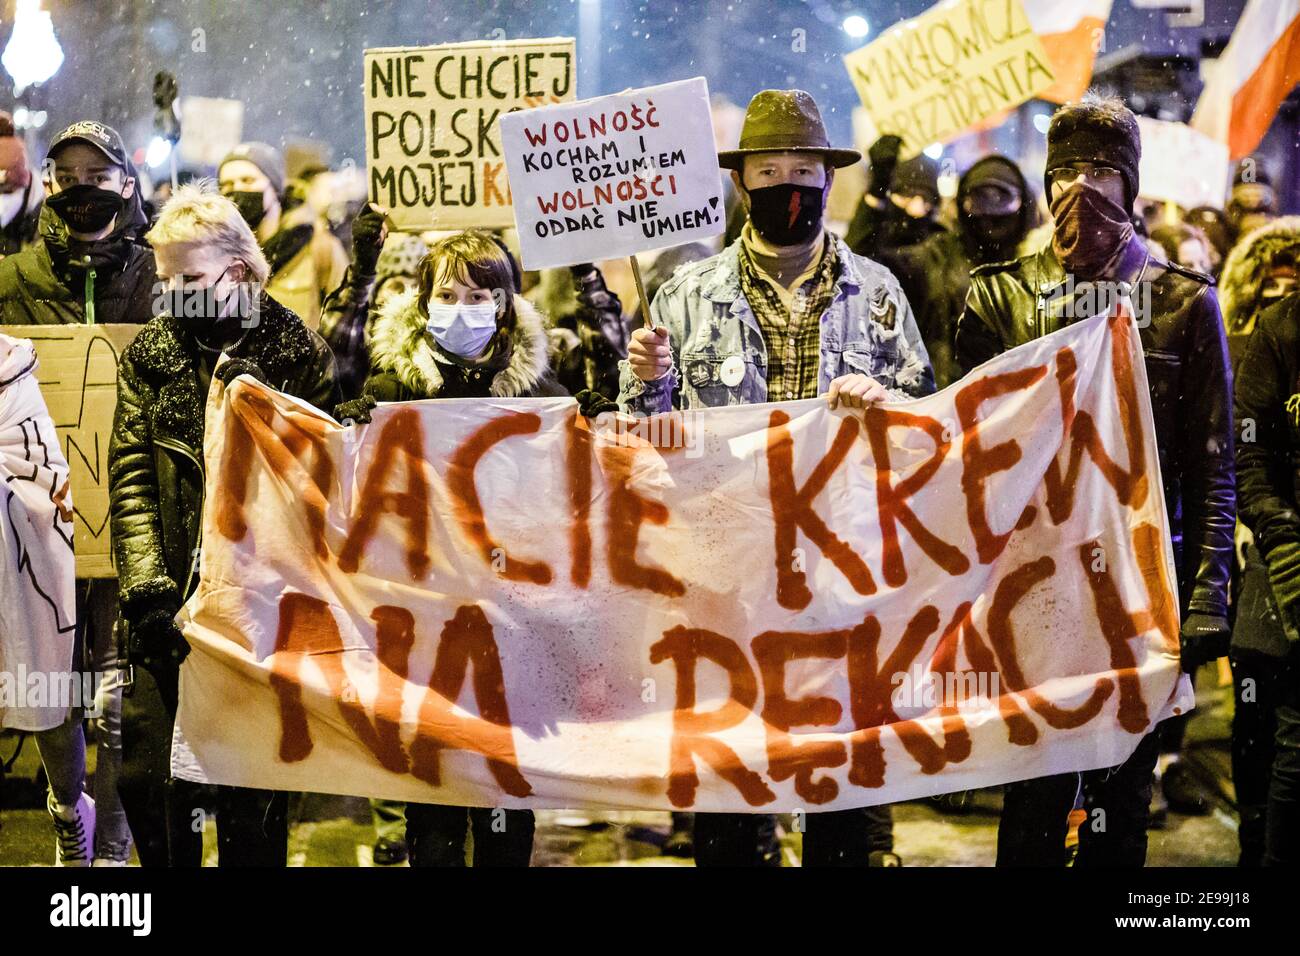 Demonstranten hielten während der Demonstrationen ein Transparent mit der Aufschrift "Sie haben Blut an den Händen".nach dem Urteil des polnischen Verfassungsgerichts, das am 27th. Januar in Kraft trat, um eines der restriktivsten Anti-Abtreibungsgesetze in Europa umzusetzen, gingen Hunderte von Polen in allen größeren Städten auf die Straße. Die Proteste wurden vom Frauenstreik organisiert. Stockfoto